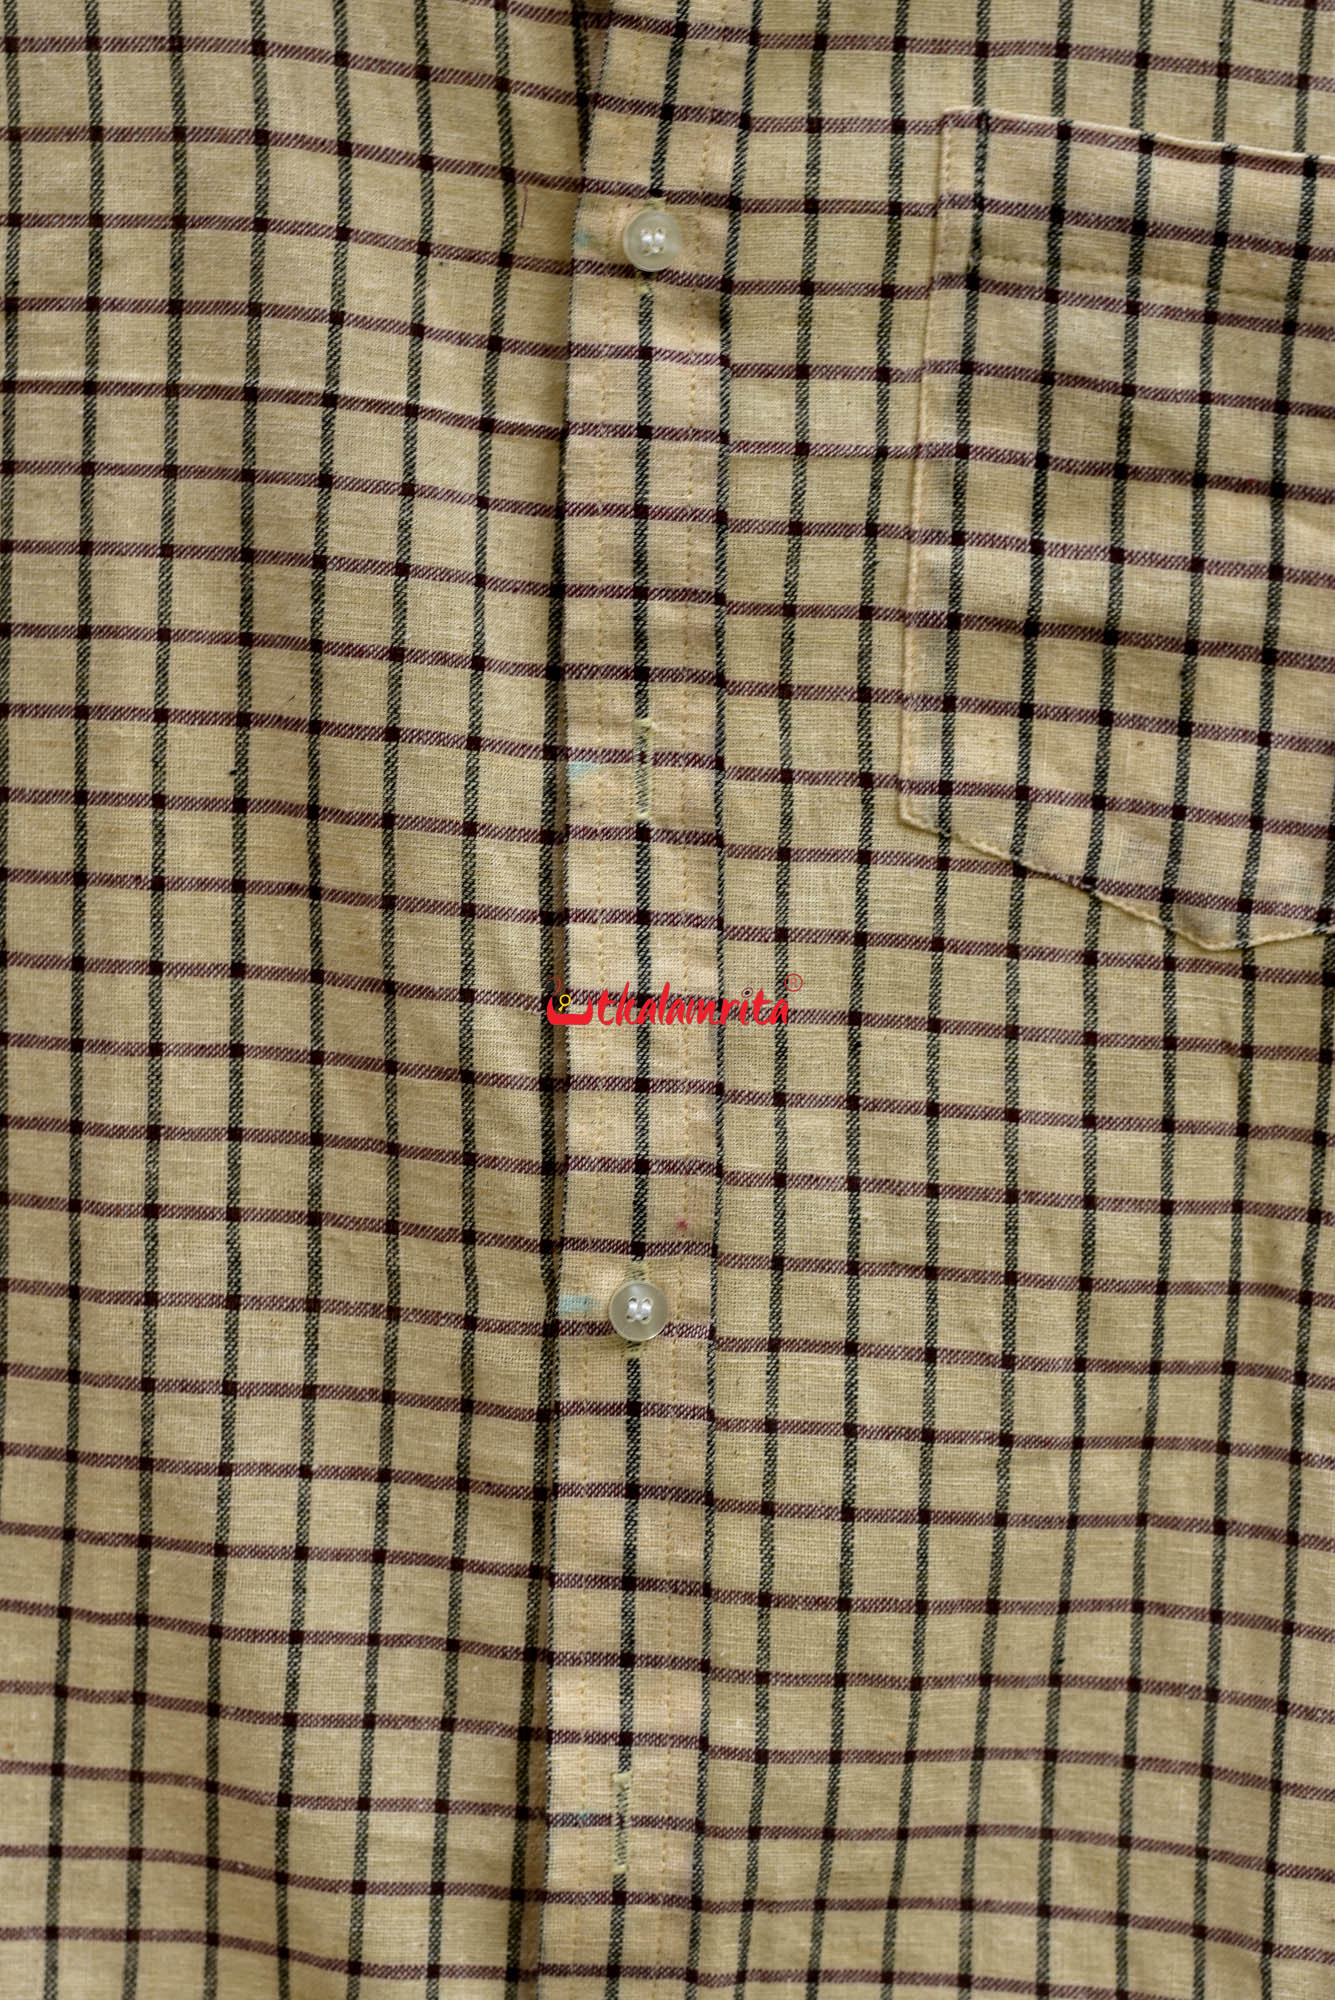 Kotpad Checks (Half Shirt)